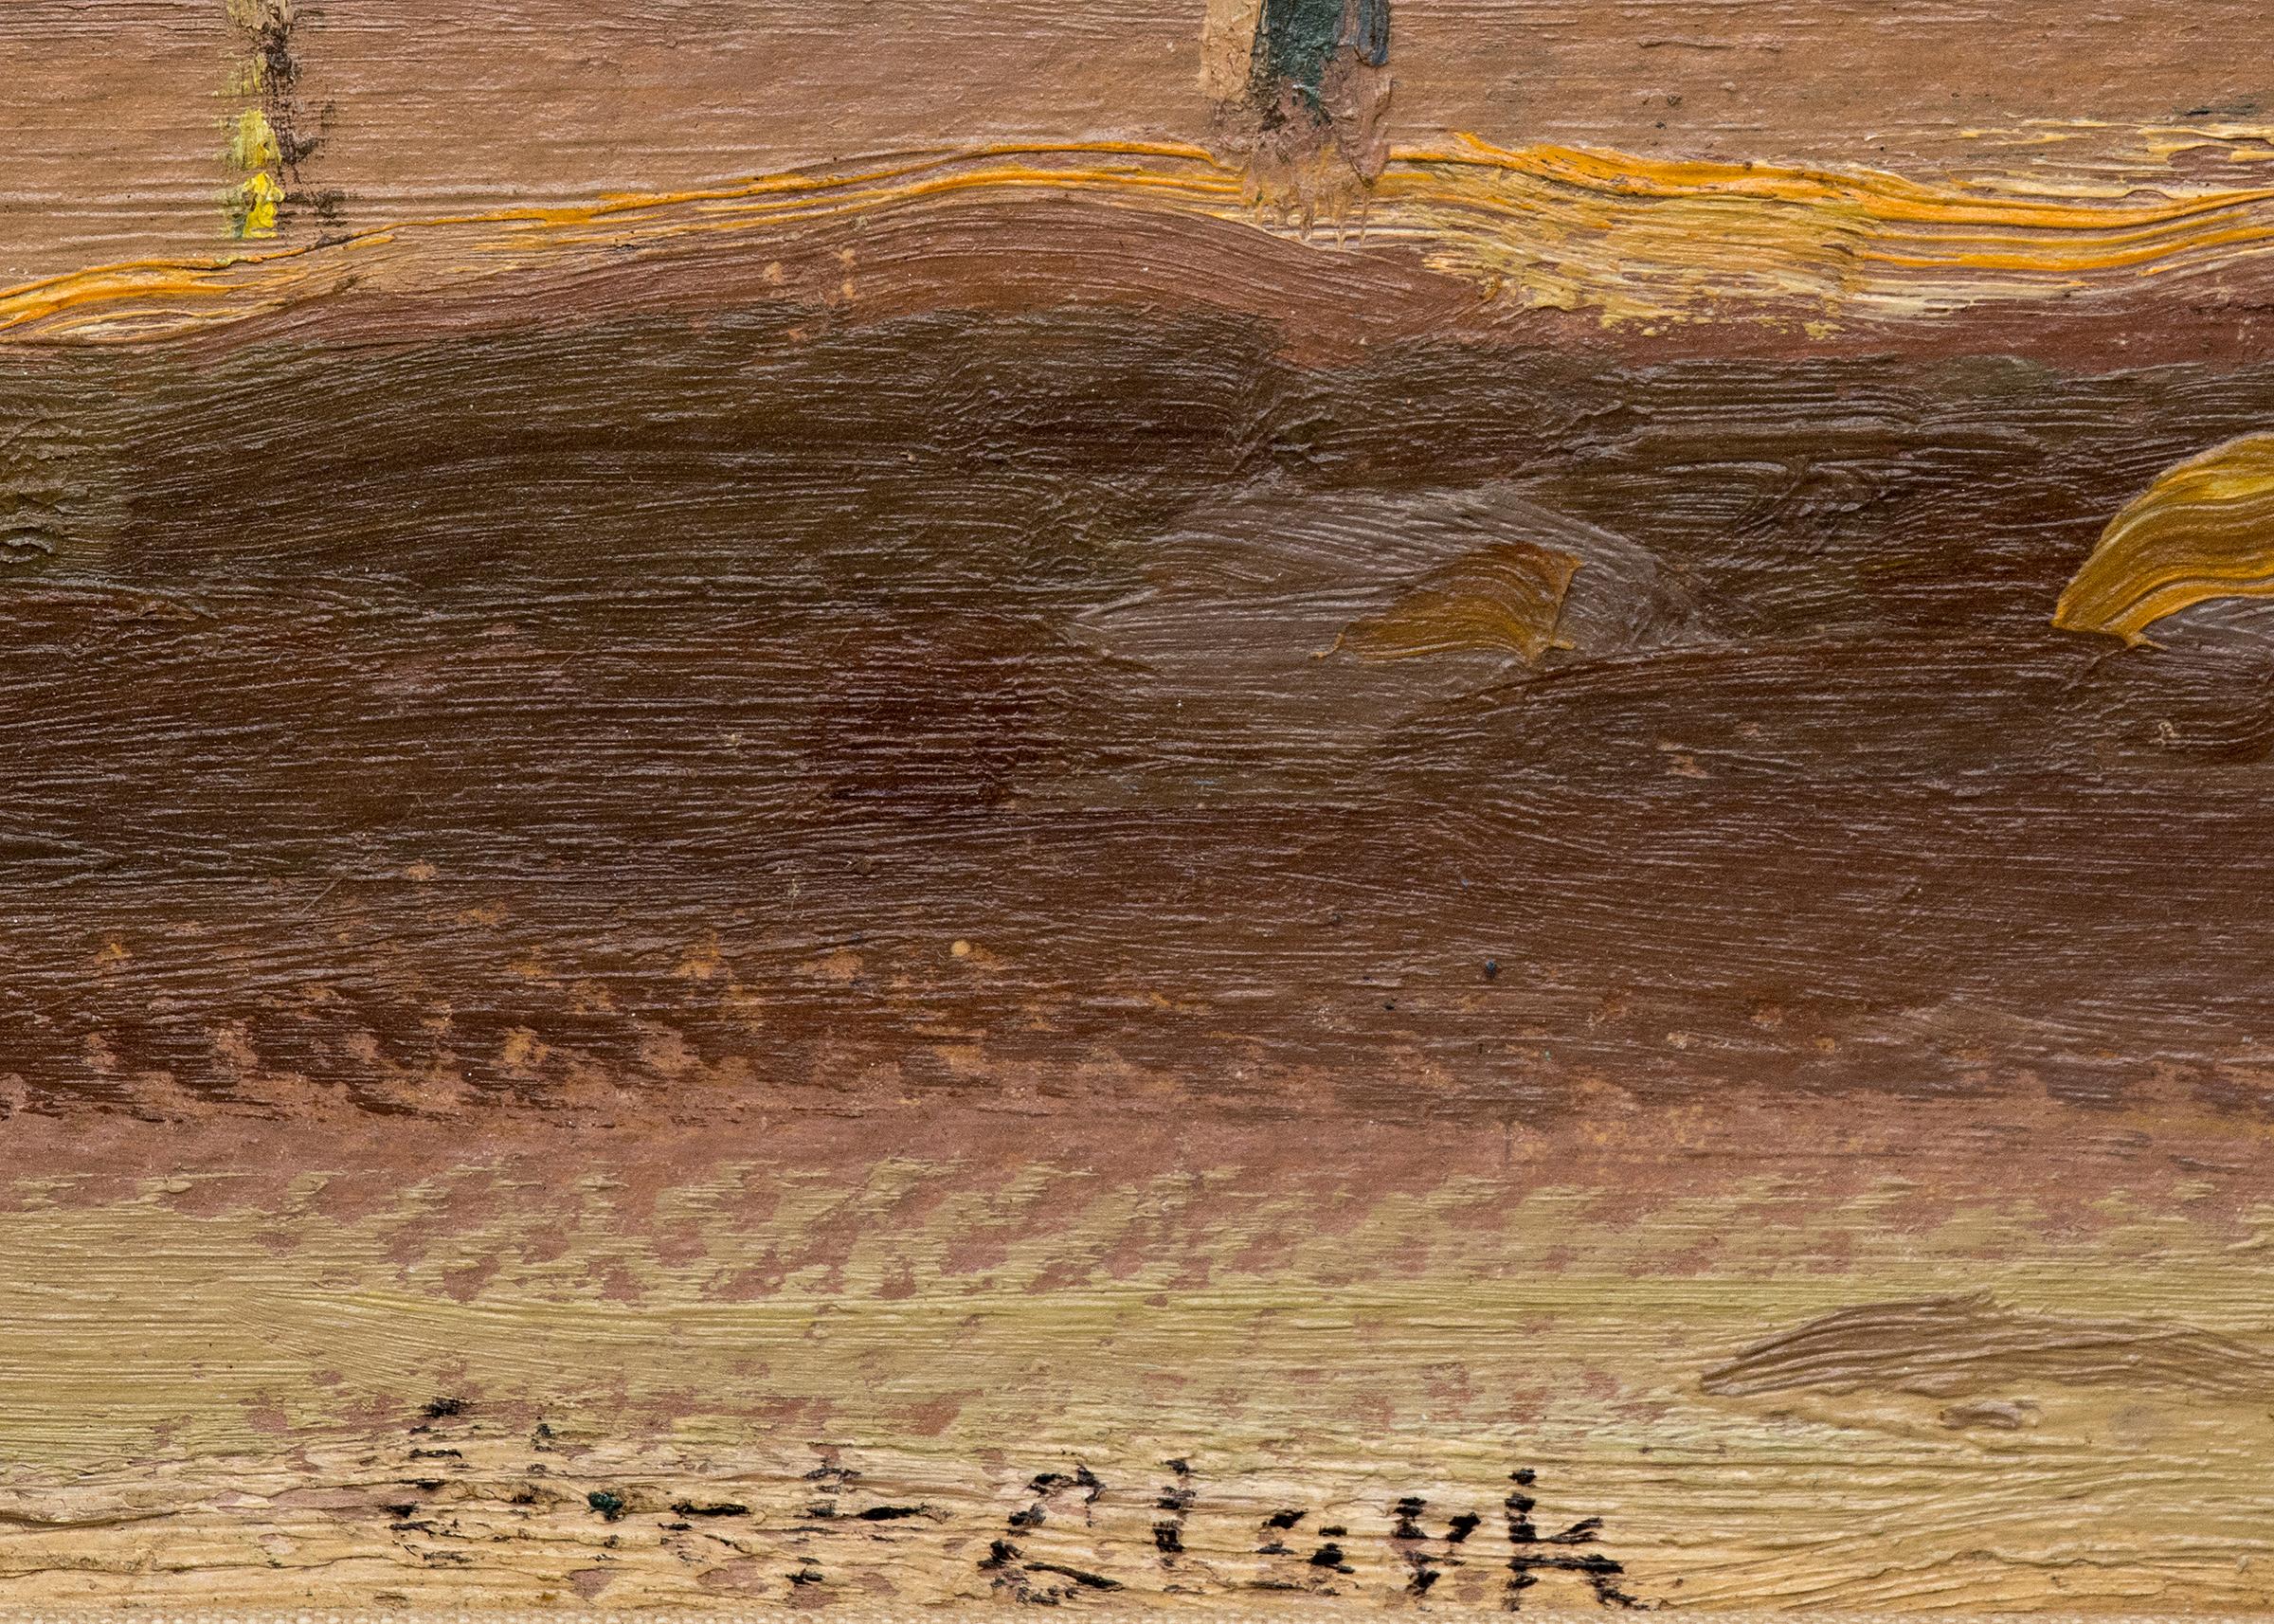 Peinture de paysage à l'huile sur panneau représentant un Pueblo près de Santa Fe, au Nouveau Mexique, signée par l'artiste Eliot Candee Clark (1883-1980), peinte en 1932. Signé par l'artiste dans le coin inférieur gauche. Composé de nuances de